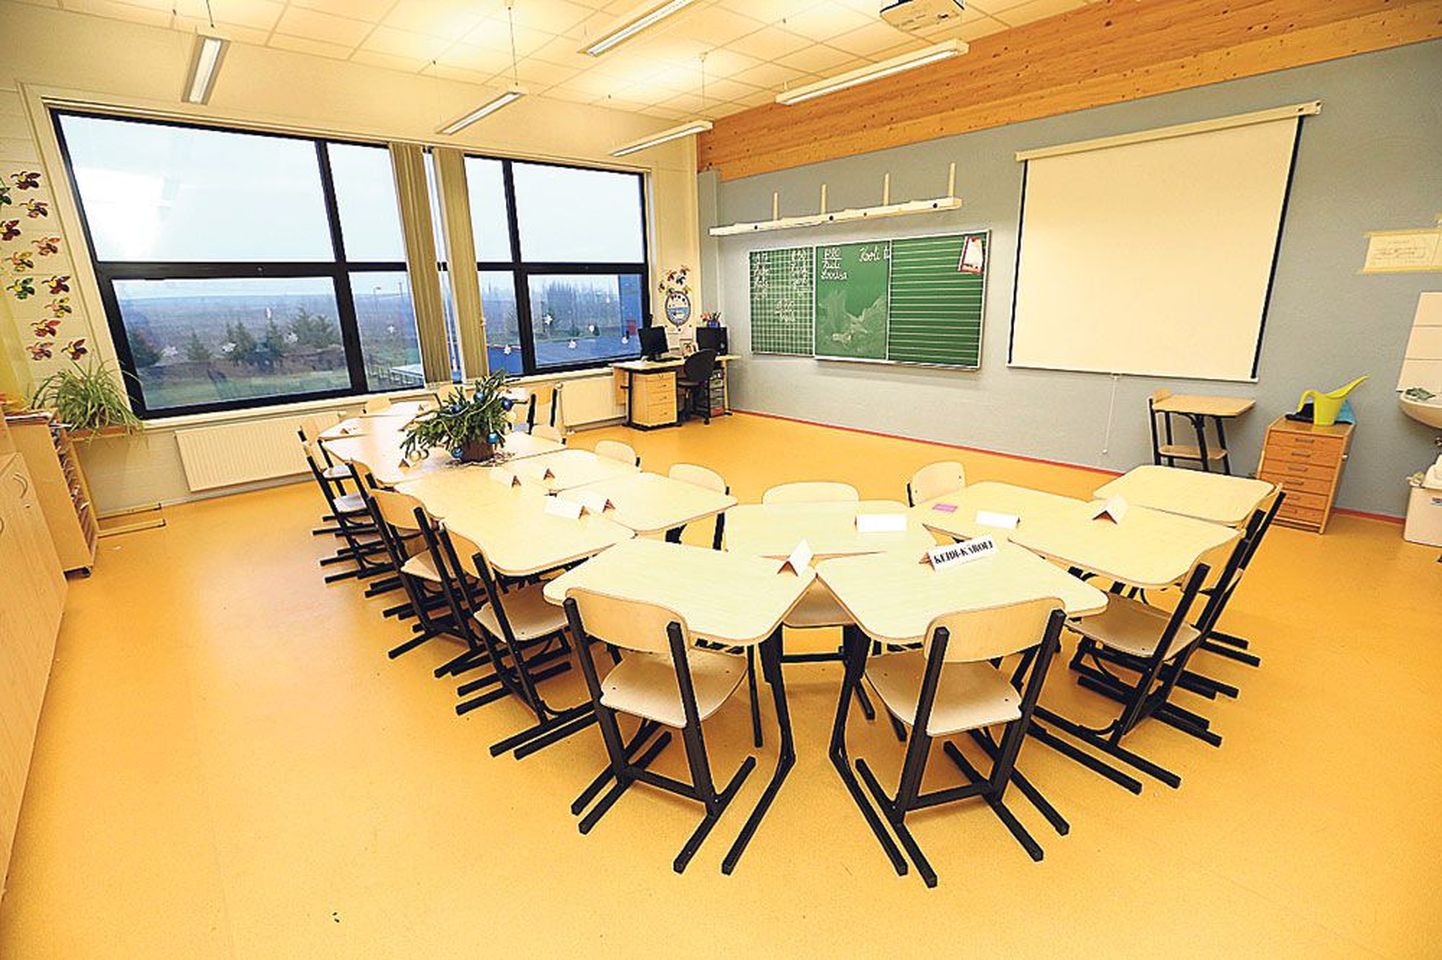 Lähte kooli algklassimaja ruum 202 on üks enim õpilasi haisuga kiusanud ruume.